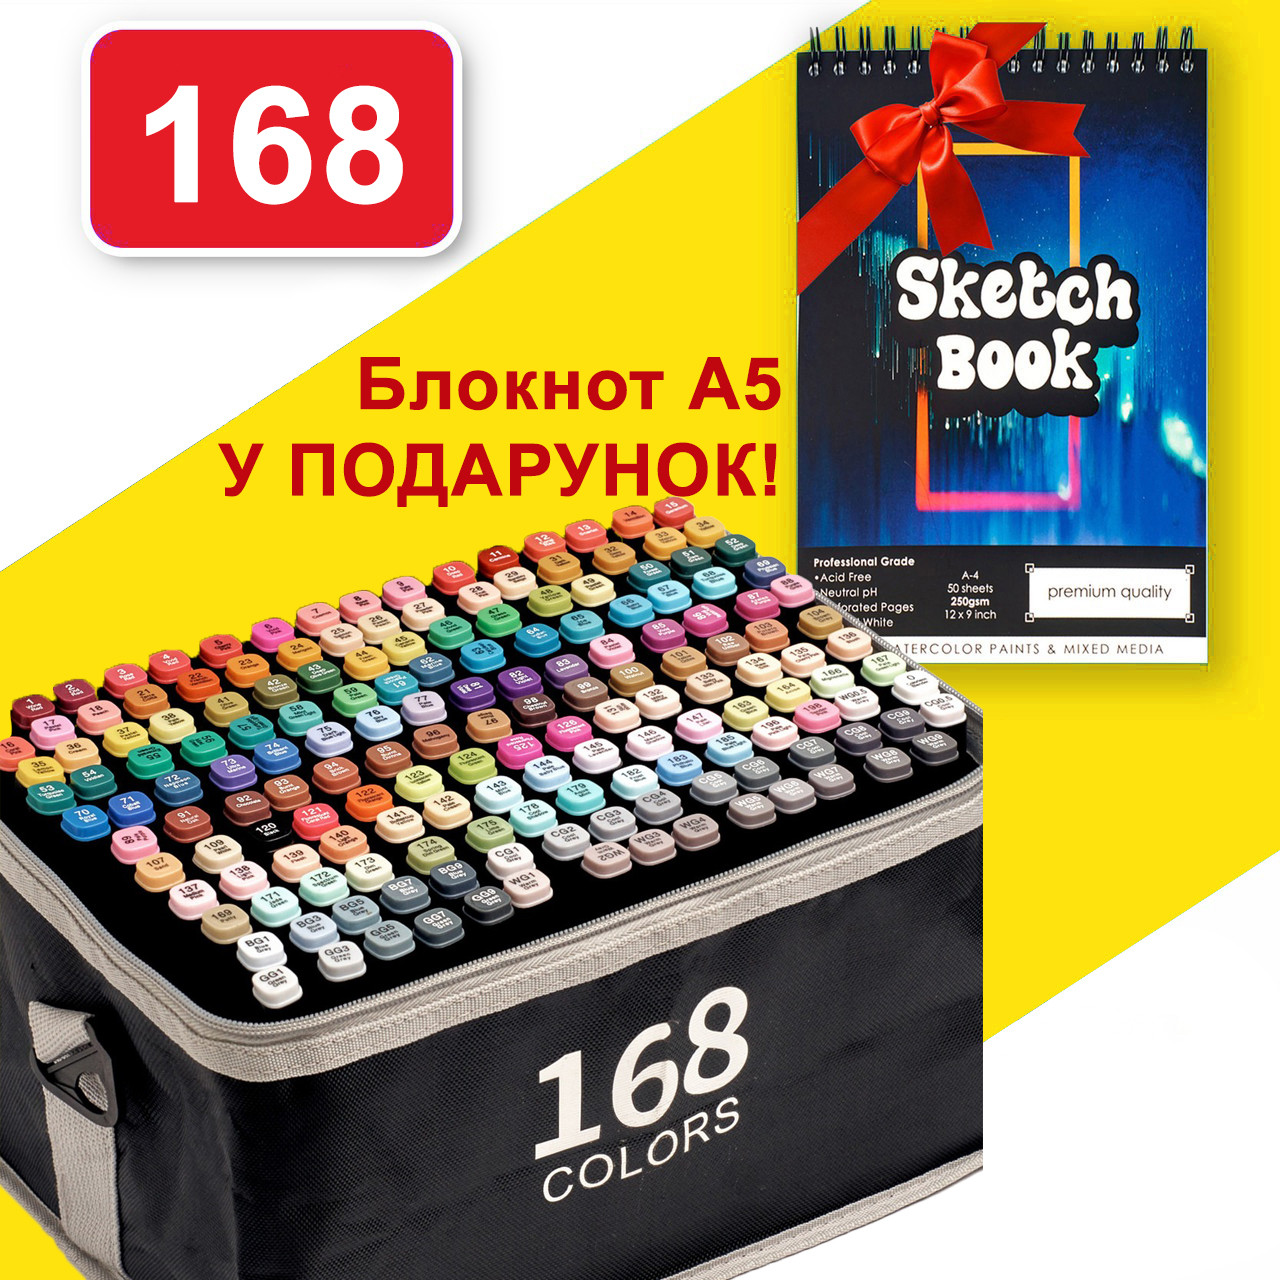 Набір скетч маркерів 168 квітів Touch Raven для малювання, в чорному чохлі  + Скетчбук А5 у подарунок!